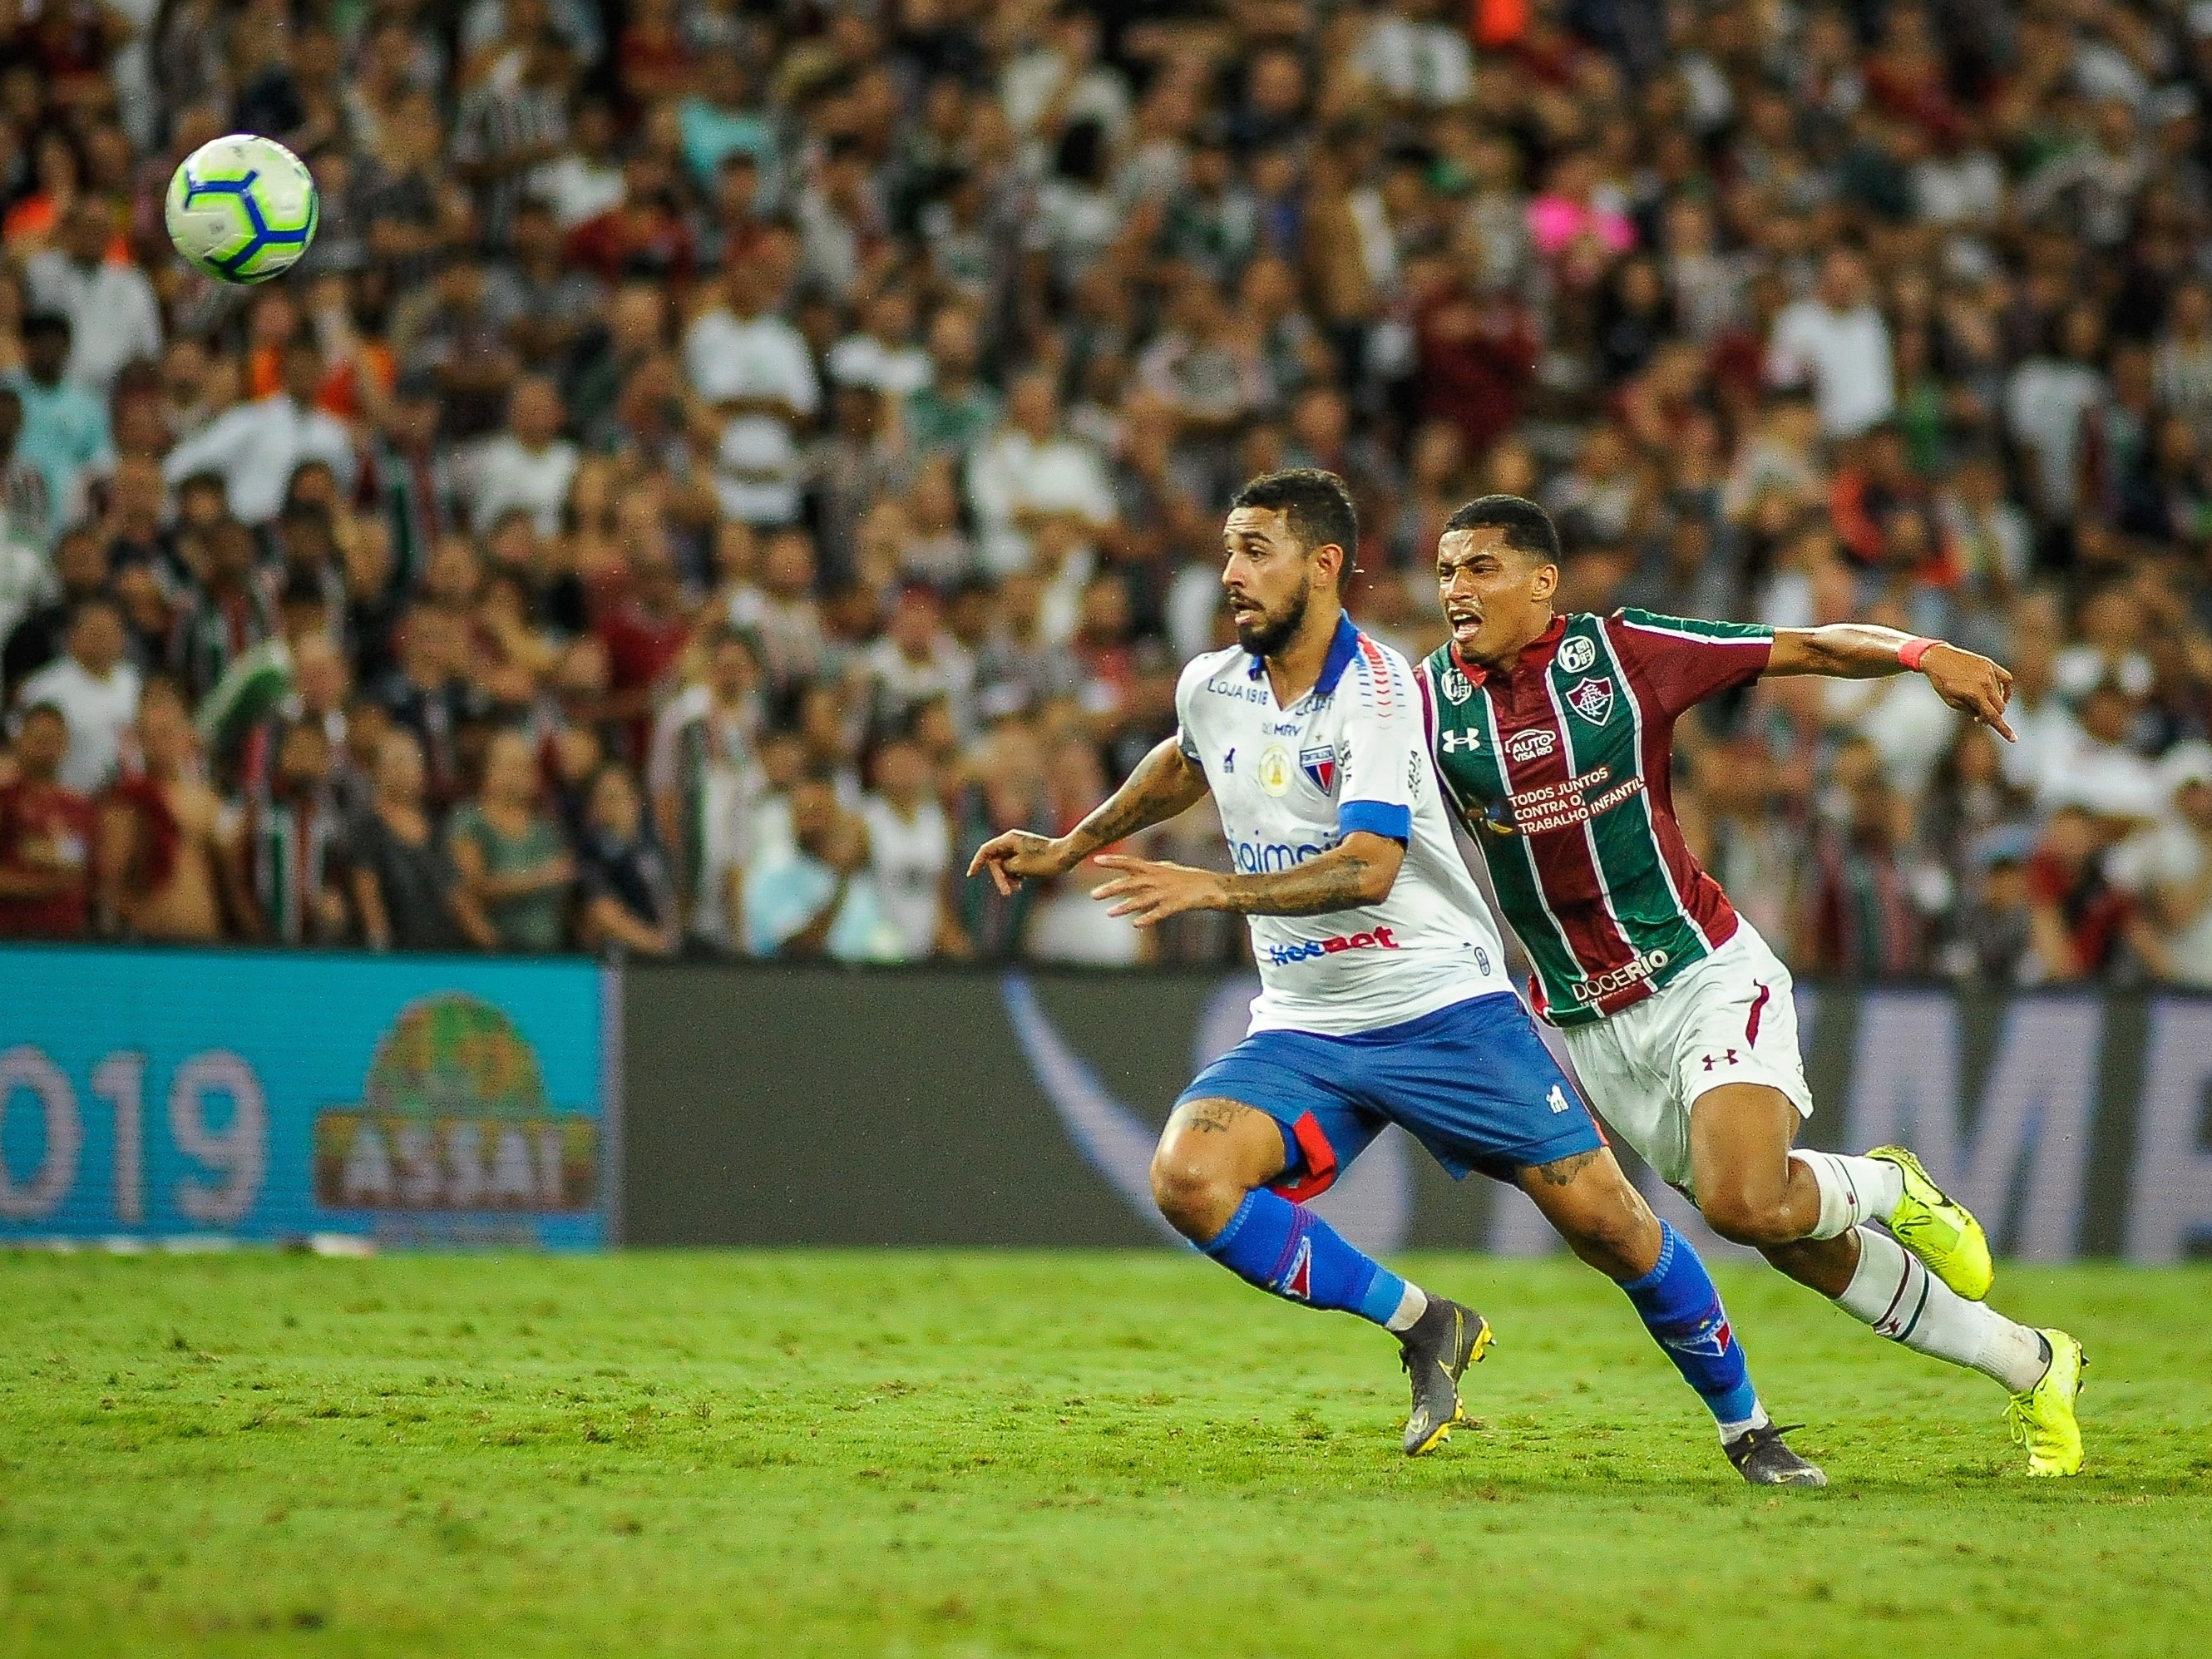 Craques do Futebol que se renderam ao marketing de jogos online -  Fluminense: Últimas notícias, vídeos, onde assistir e próximos jogos